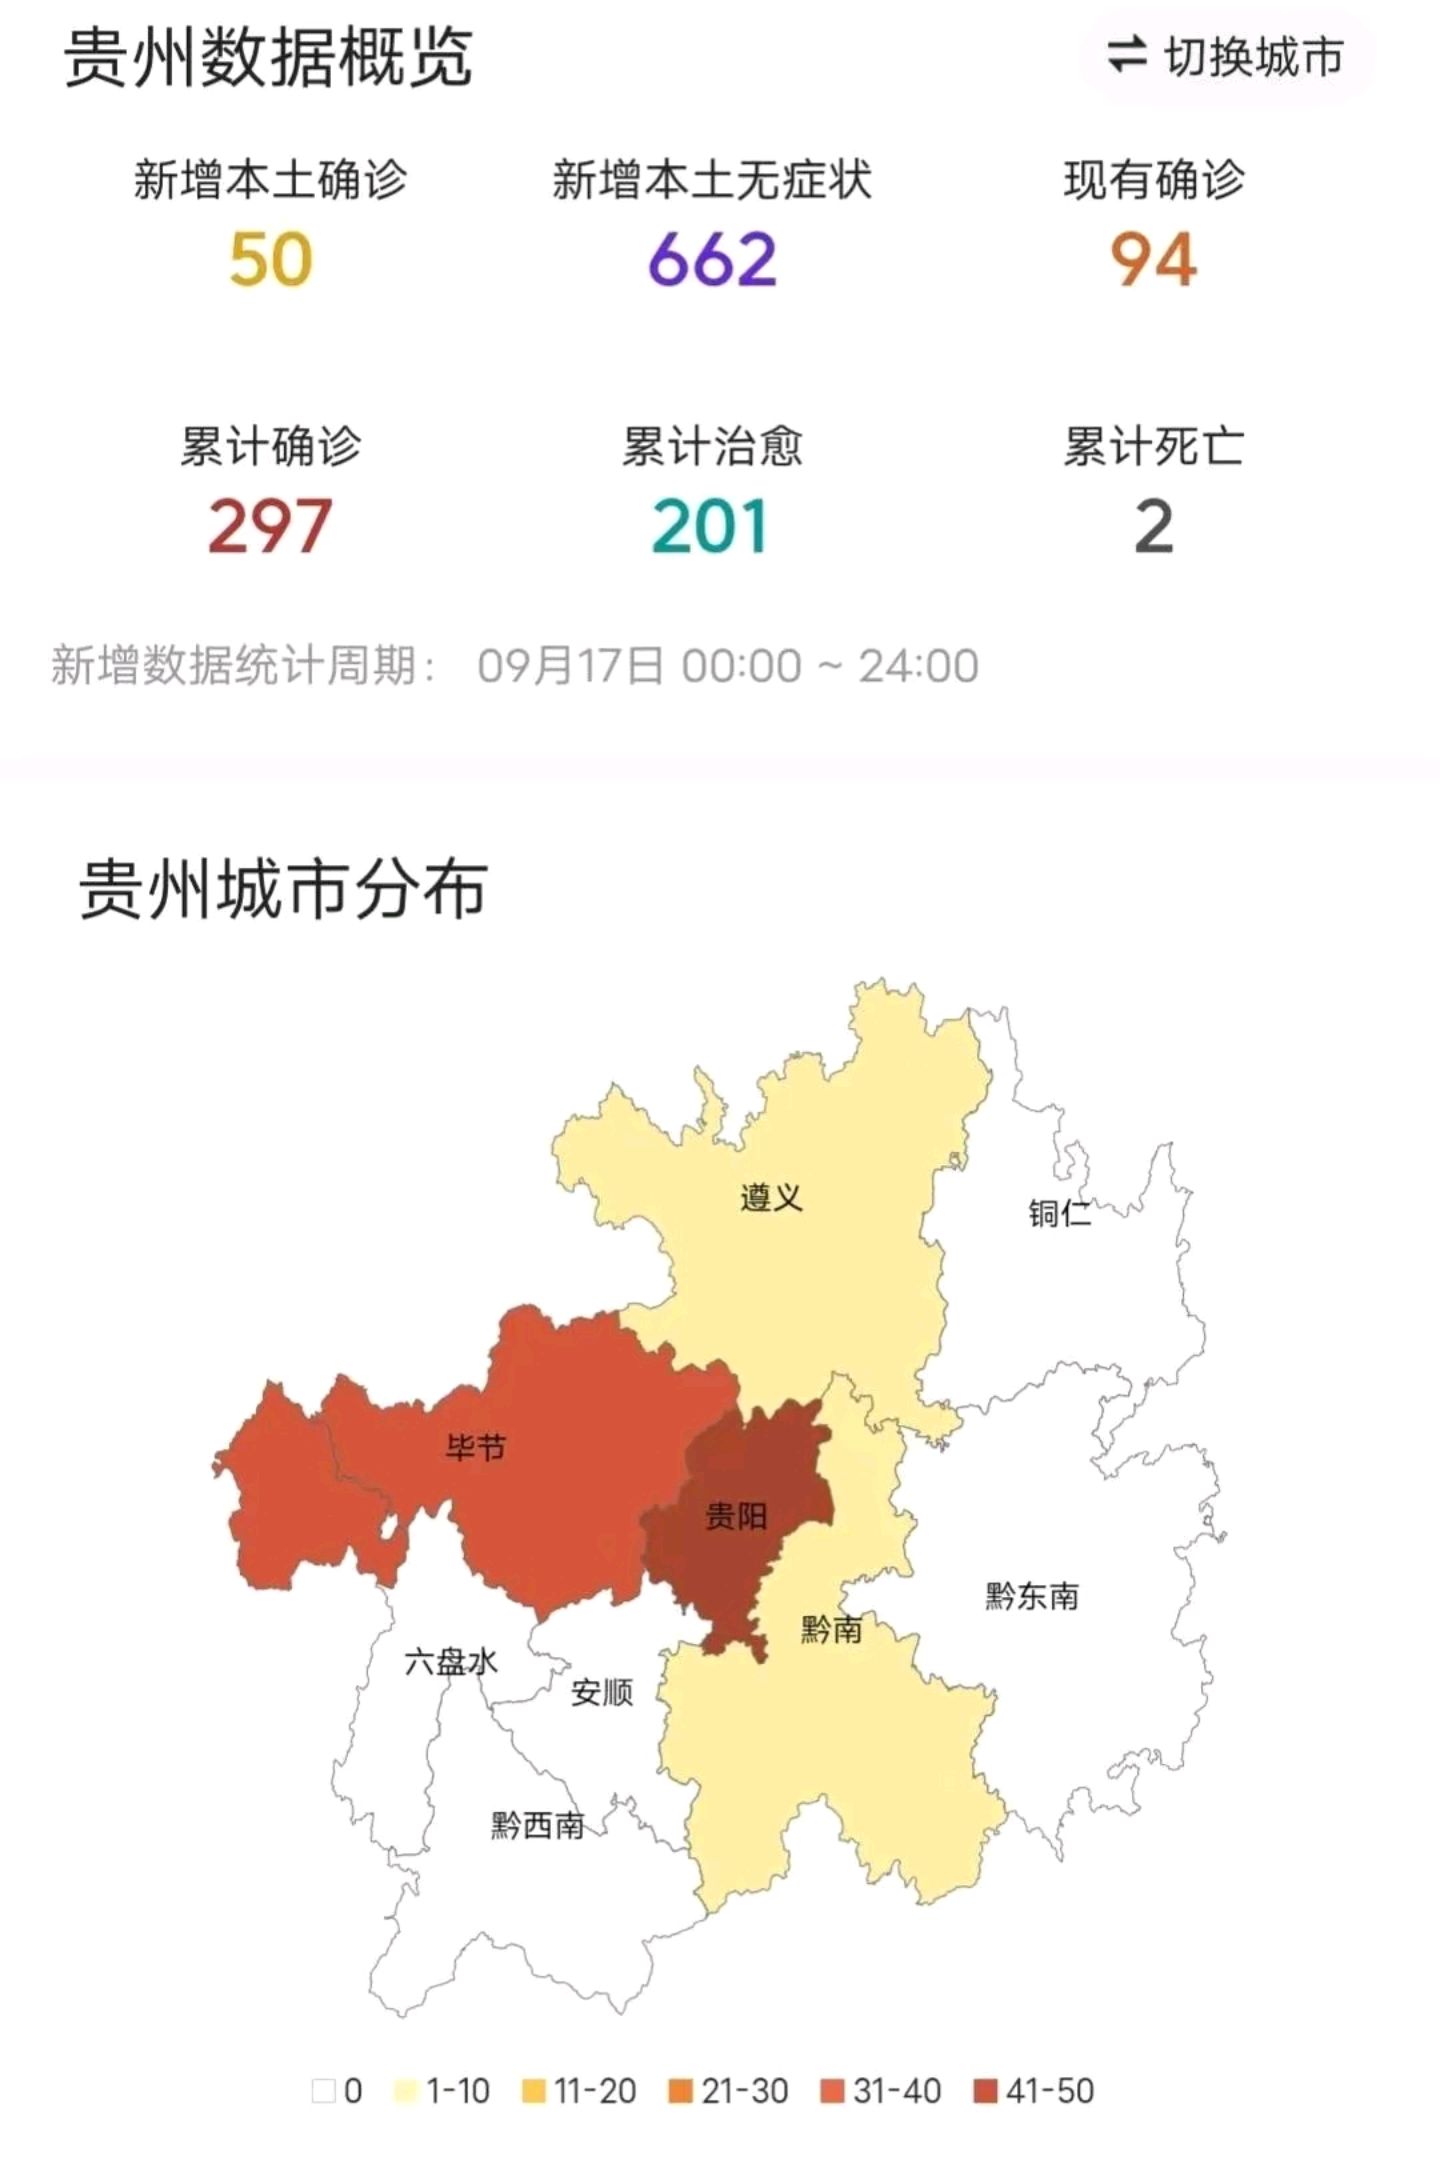 9月18日贵州疫情最新消息!昨日新增本土感染者50 662例